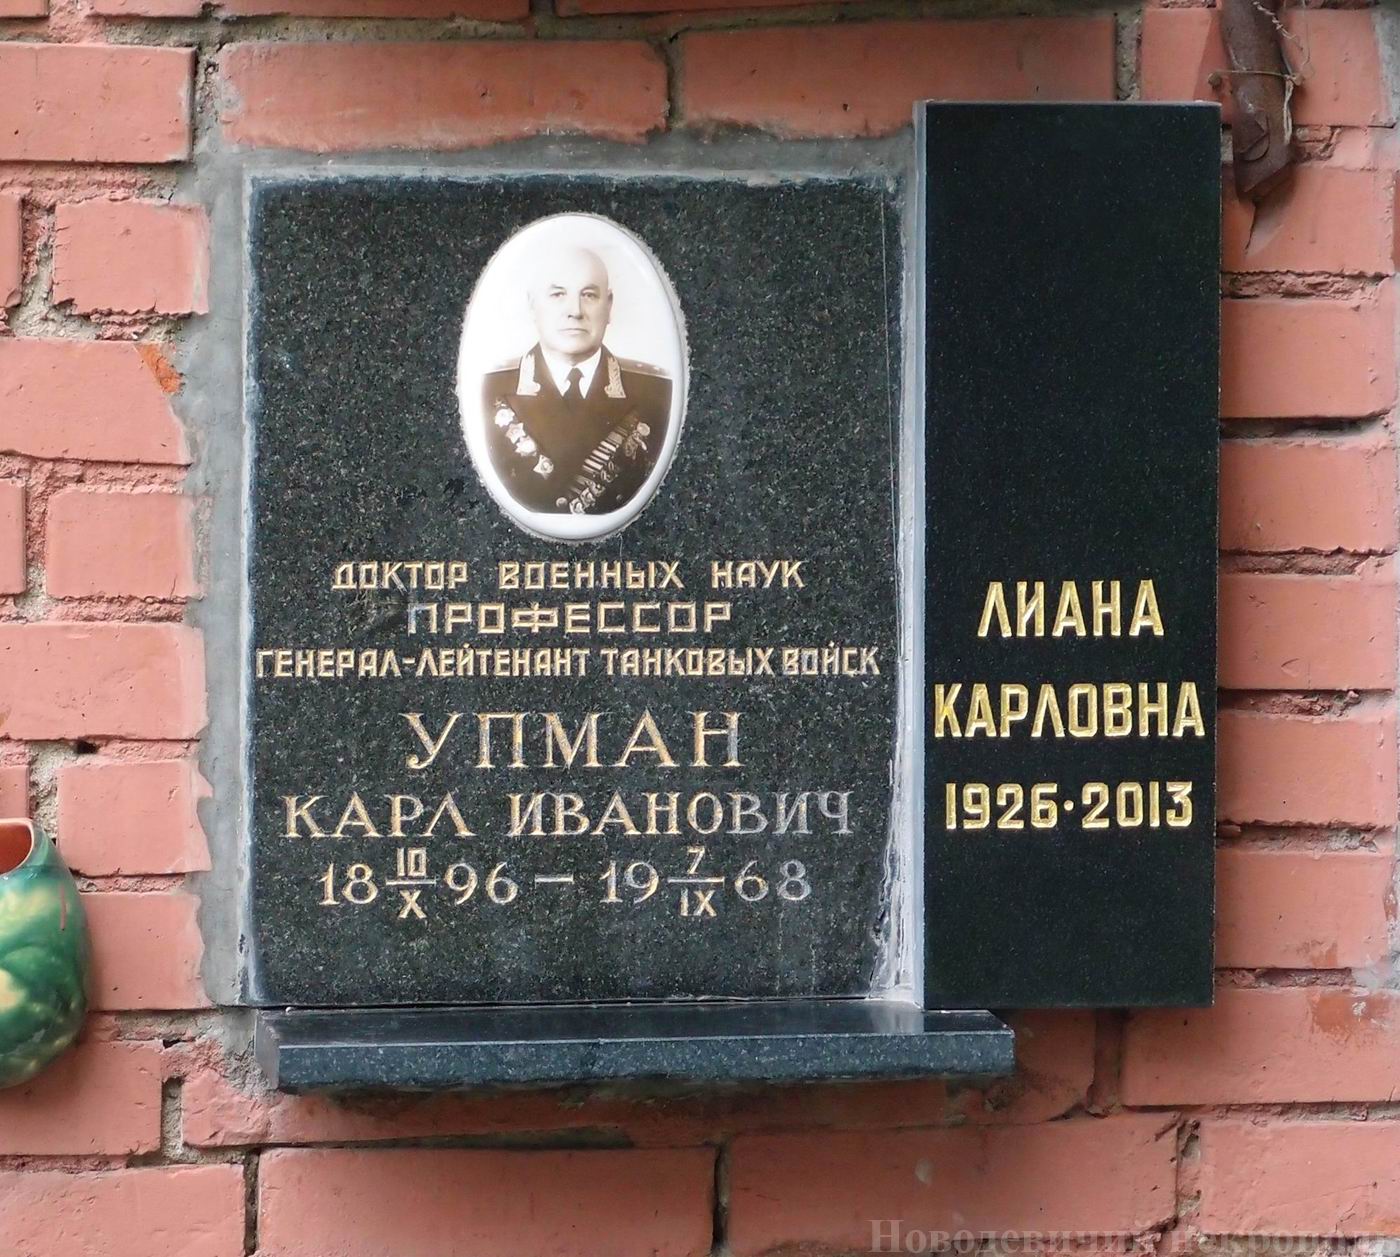 Плита на нише Упмана К.И. (1896–1968), на Новодевичьем кладбище (колумбарий [129]–16–3). Нажмите левую кнопку мыши, чтобы увидеть вариант до 2013.